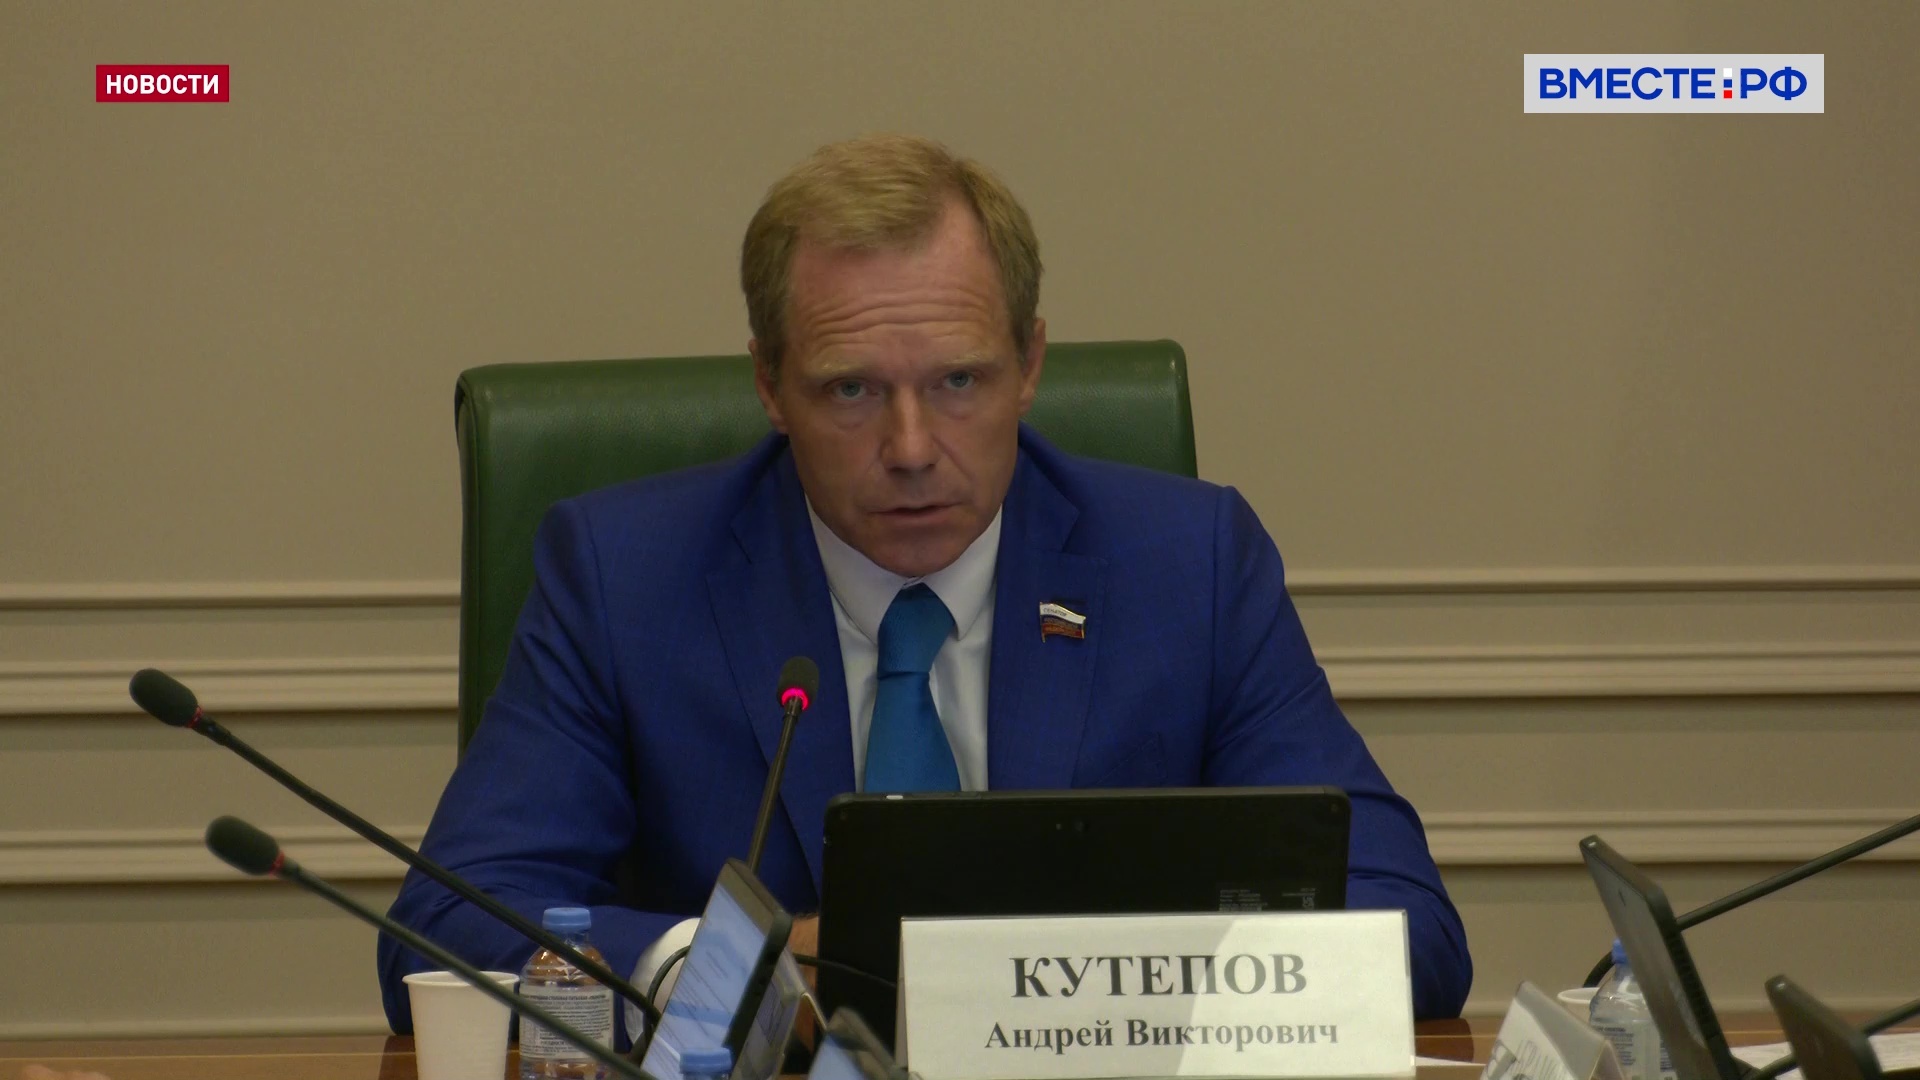 Кутепов предложил подумать над преференциями для частного бизнеса в космической отрасли